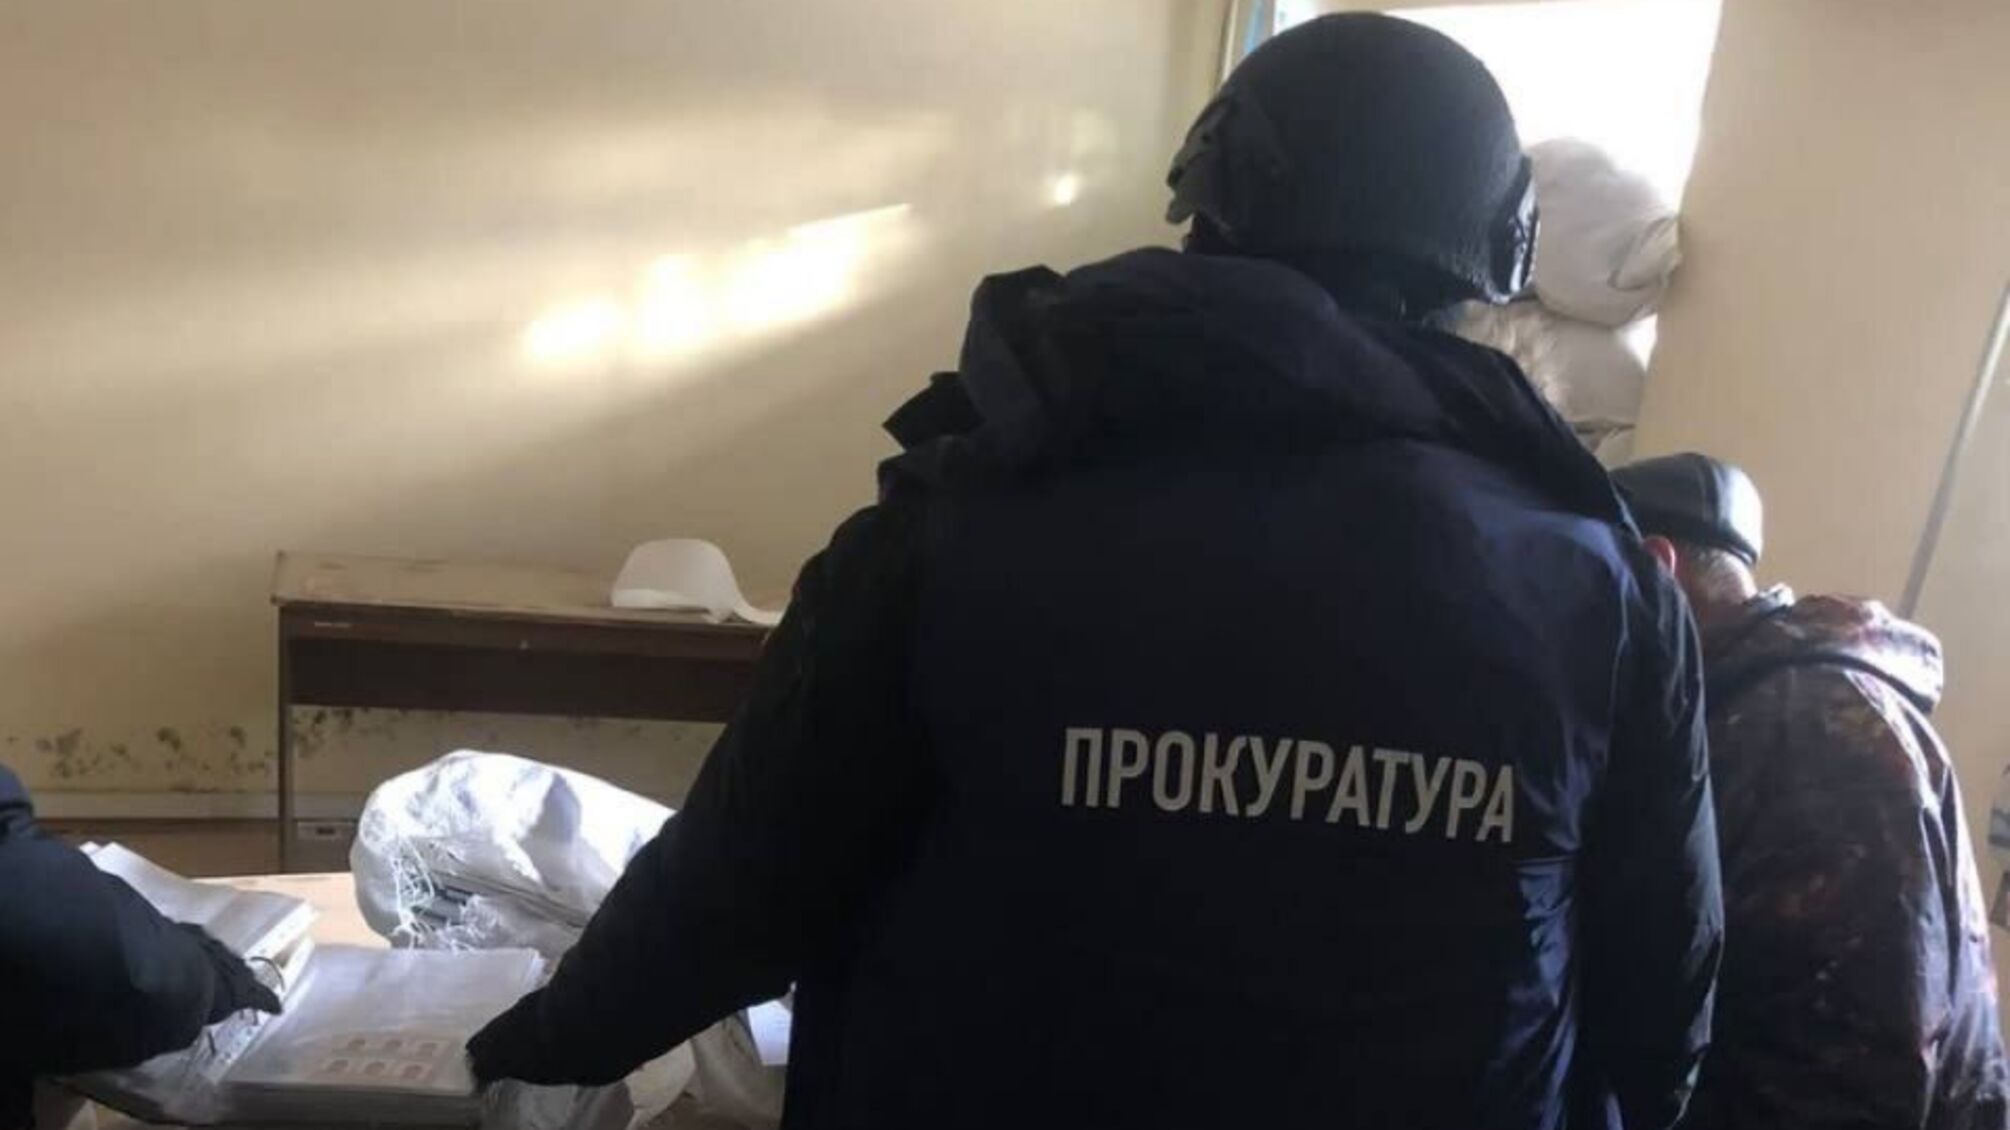 окупанти, в паніці тікаючи з Харківщини, залишили документи псевдополіцейських